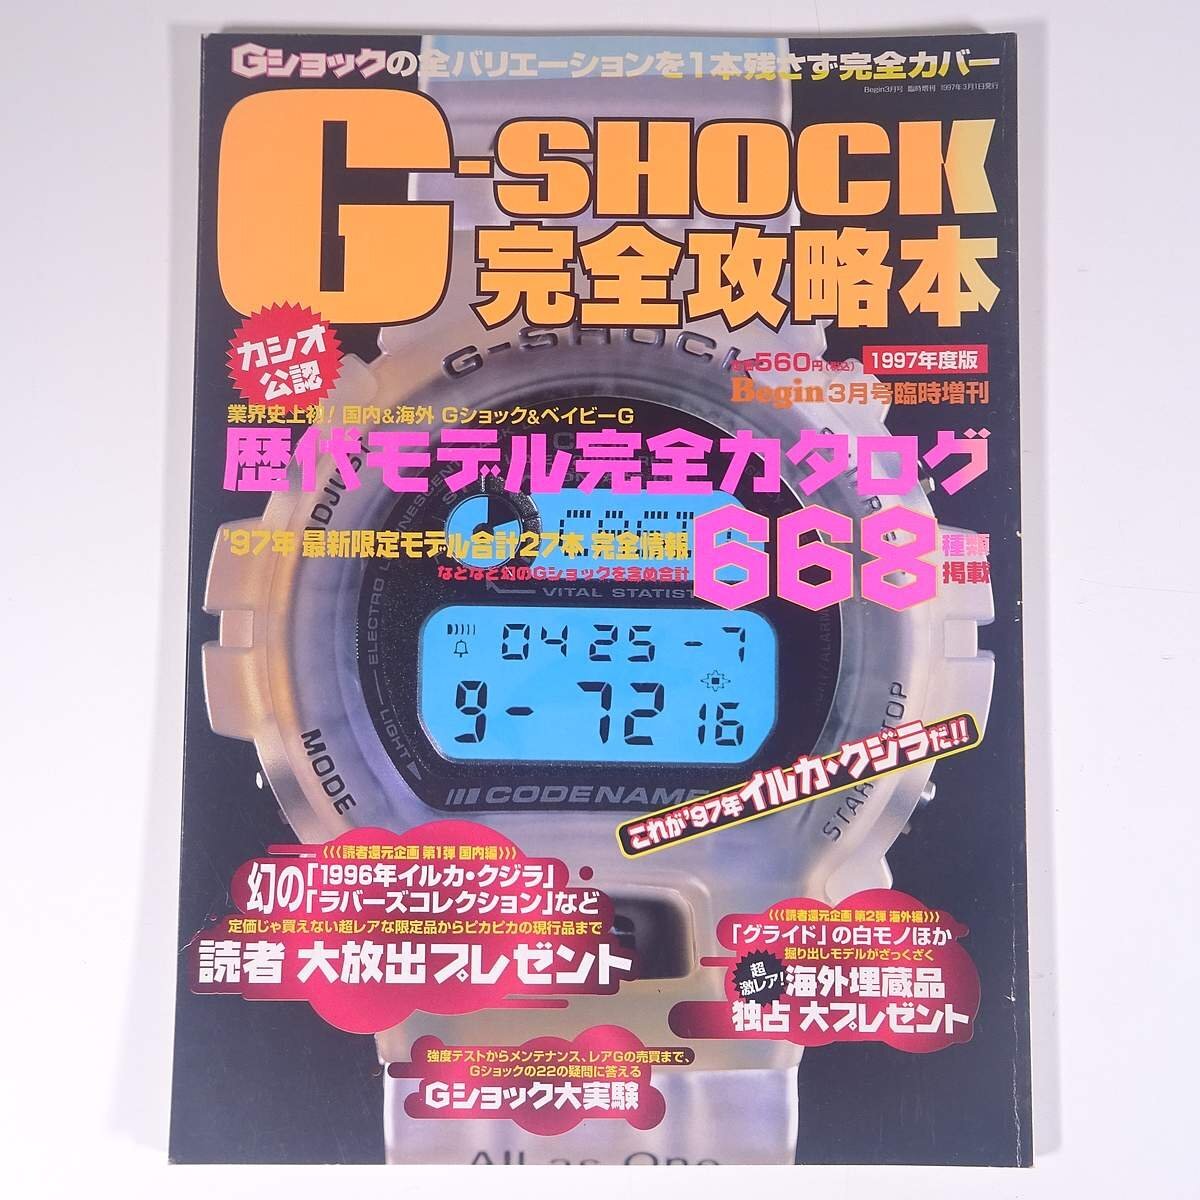 G-SHOCK совершенно гид 1997 года выпуск мир культура фирма 1997 большой этот рисунок версия альбом с иллюстрациями каталог наручные часы часы G-SHOCK G амортизаторы 